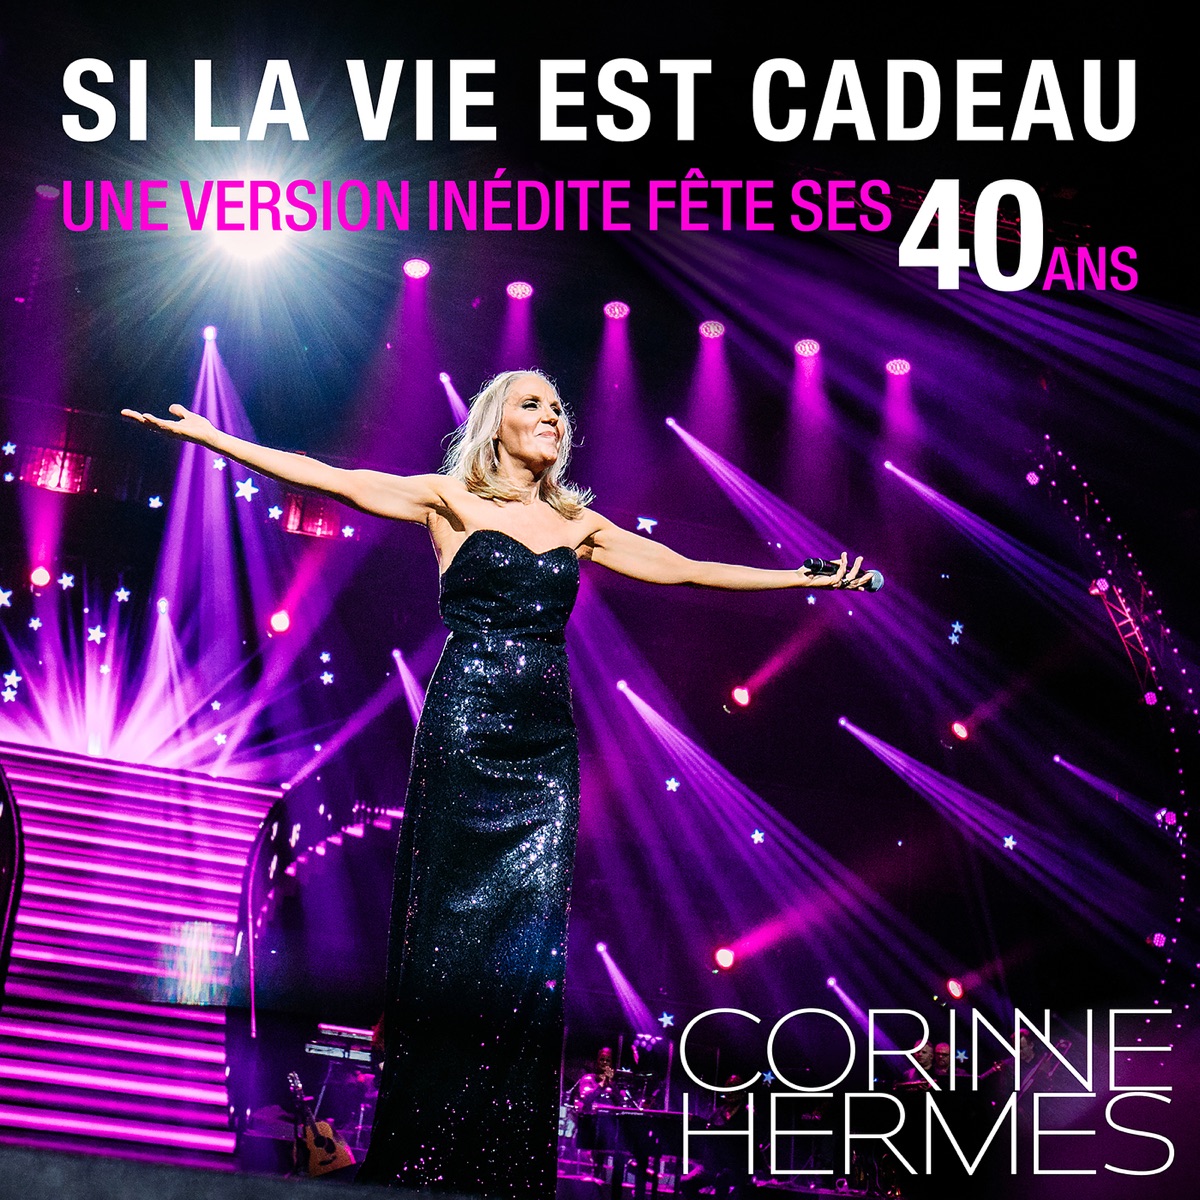 SI LA VIE EST CADEAU (Une version inédite fête ses 40 Ans) - Single – Album  par Corinne Hermès – Apple Music